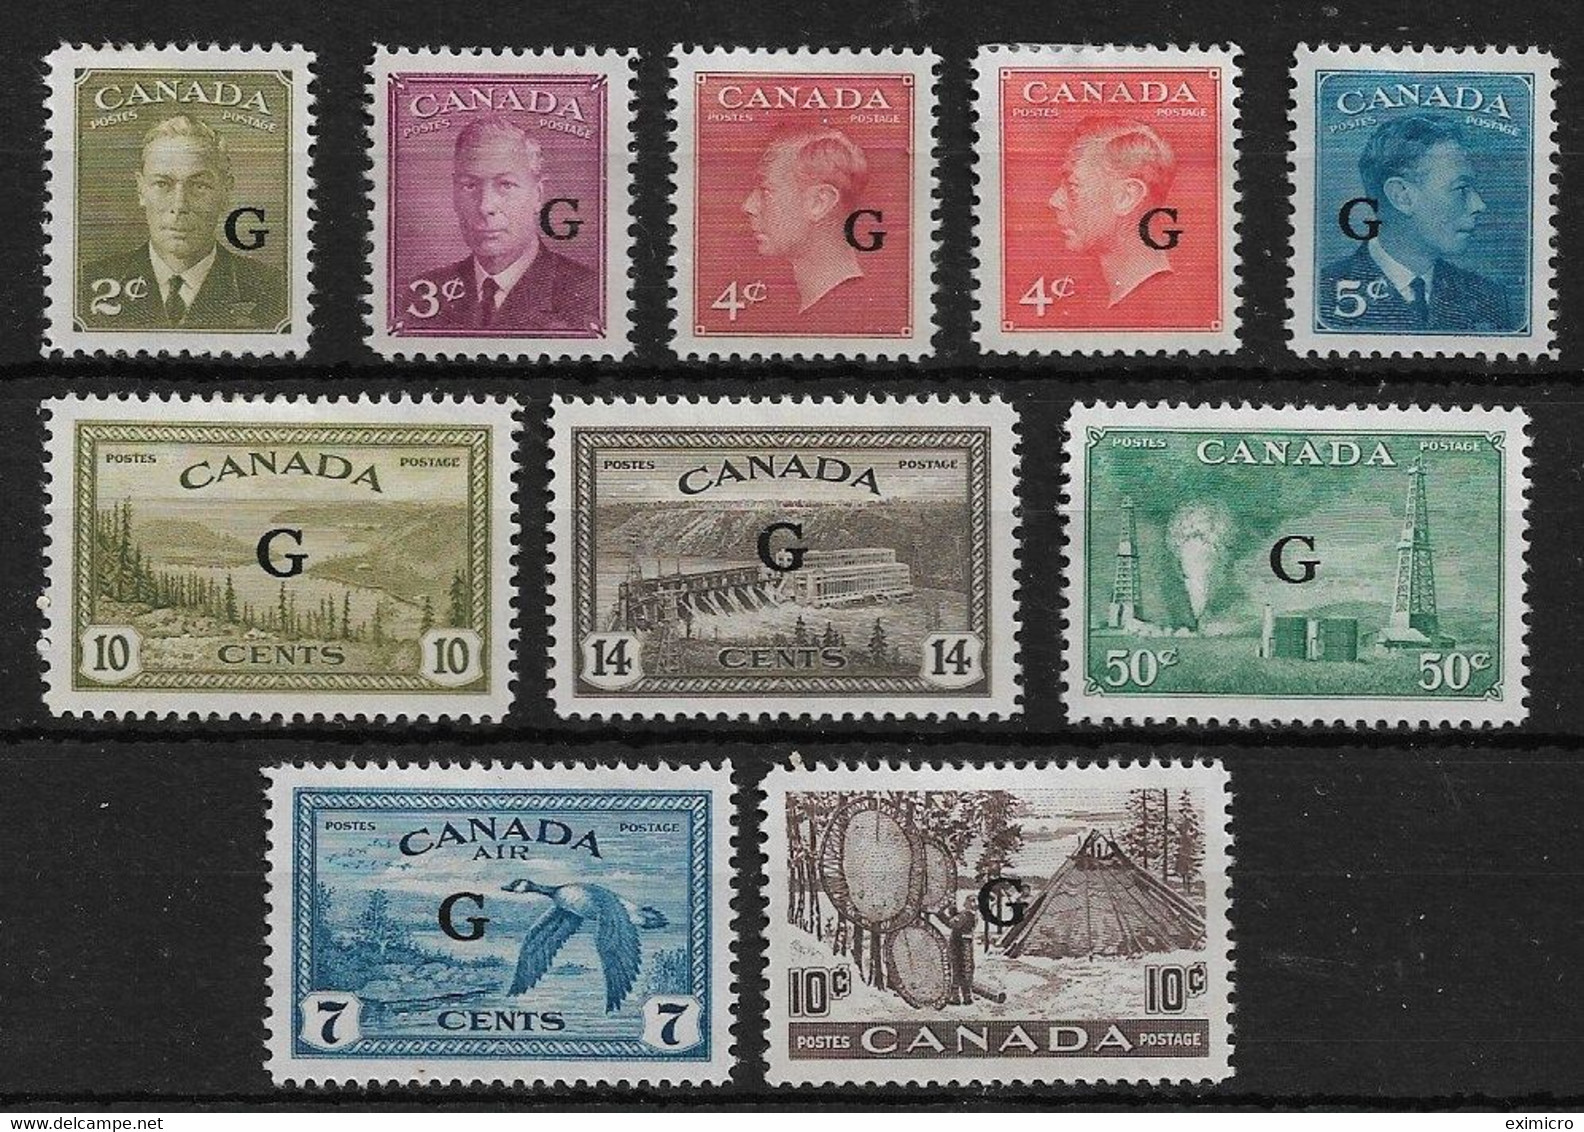 CANADA 1950 - 1952 'G' OVERPRINT OFFICIALS BETWEEN SG O180 And SG O191 MOUNTED MINT Cat £97 - Opdrukken